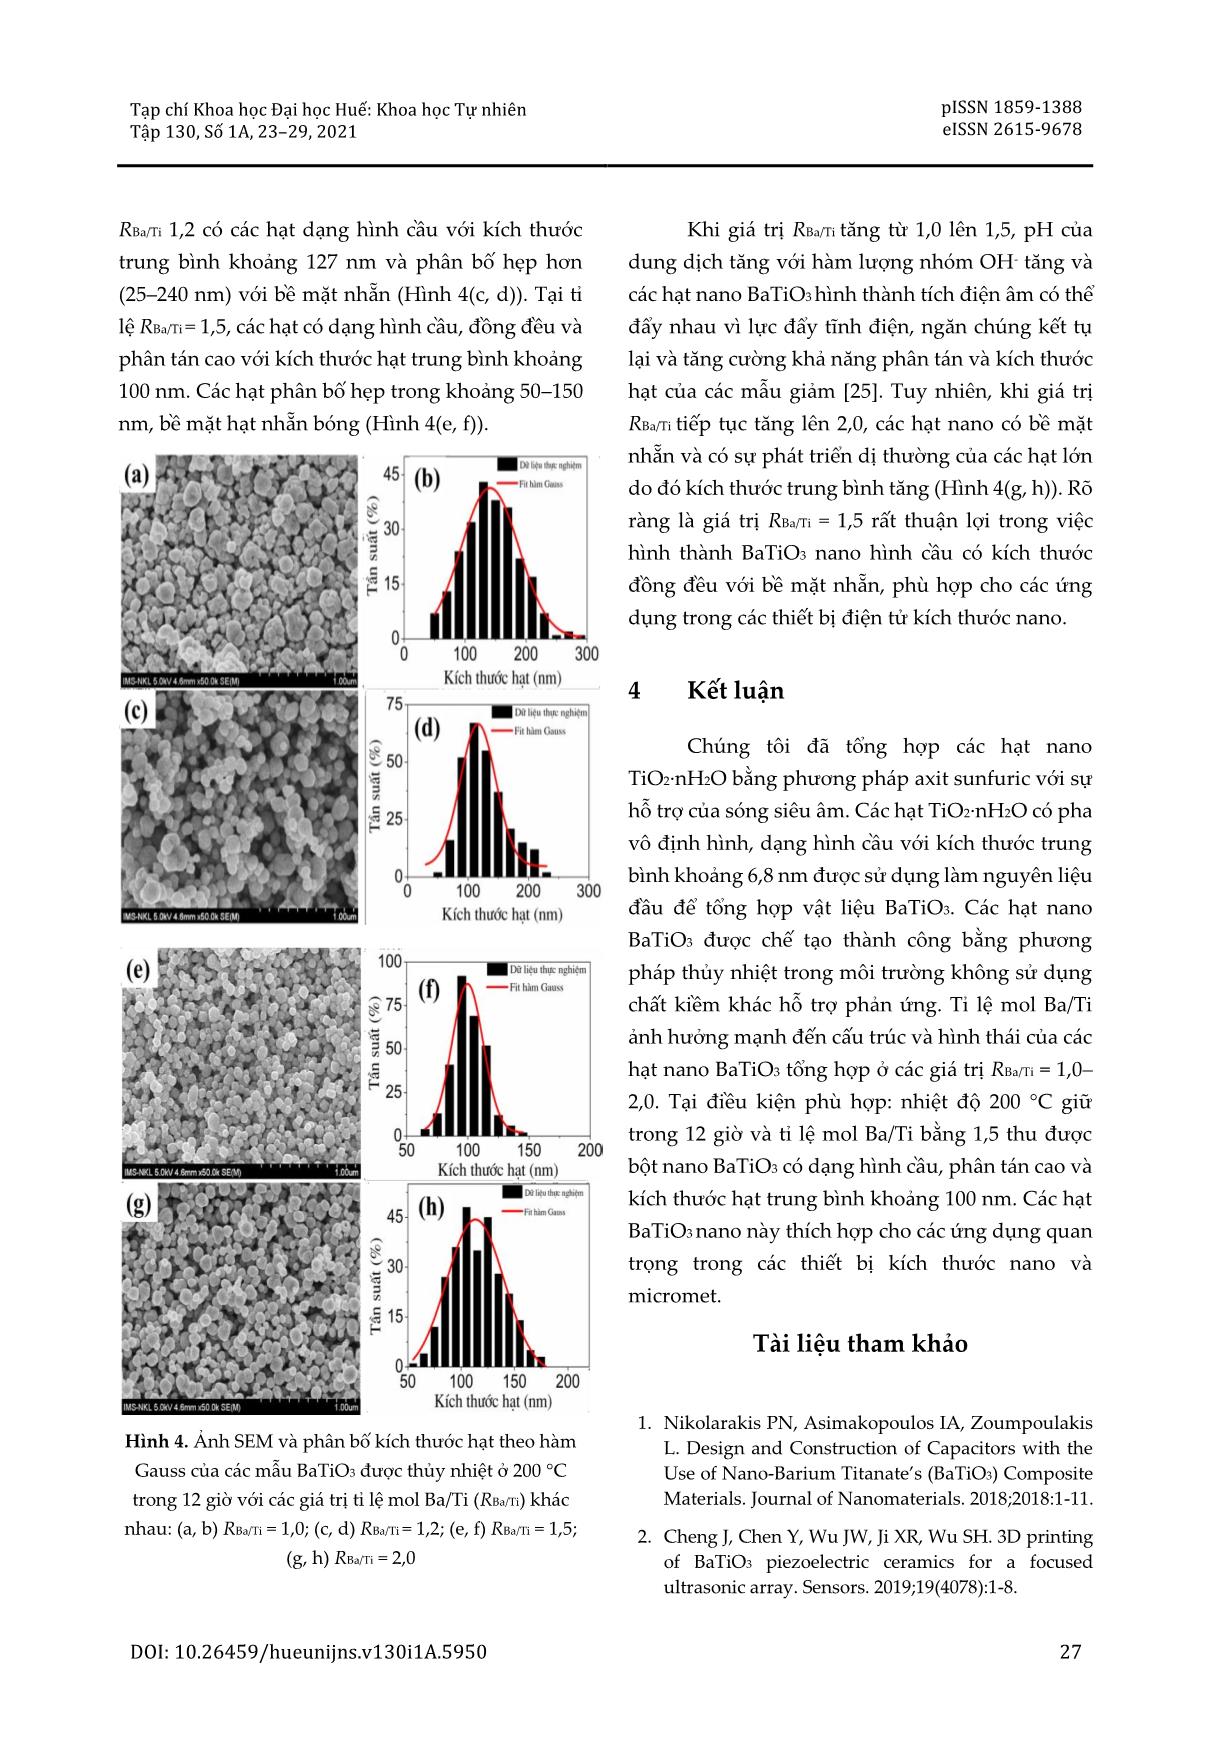 Ảnh hưởng của tỉ lệ Ba/Ti  lên đặc trng của hạt nano BaTiO₃  tổng hợp bằng phương pháp thủy nhiệt trang 5